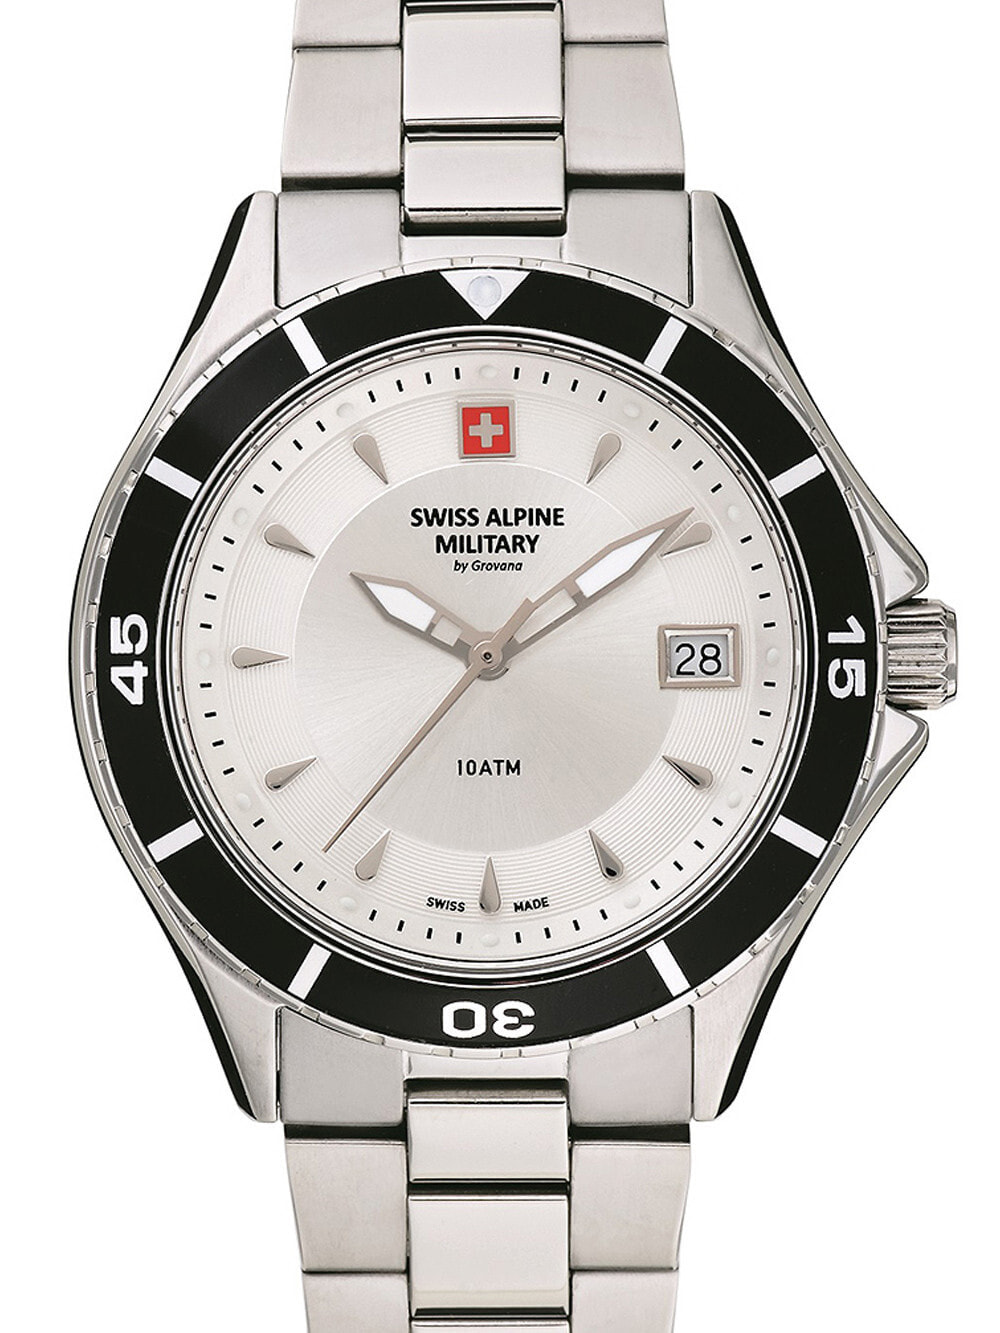 Женские наручные кварцевые часы Swiss Alpine Military ремешок из нержавеющей стали. Водонепроницаемость-10 АТМ. Защищенное от царапин минеральное стекло. Окошко с датой.